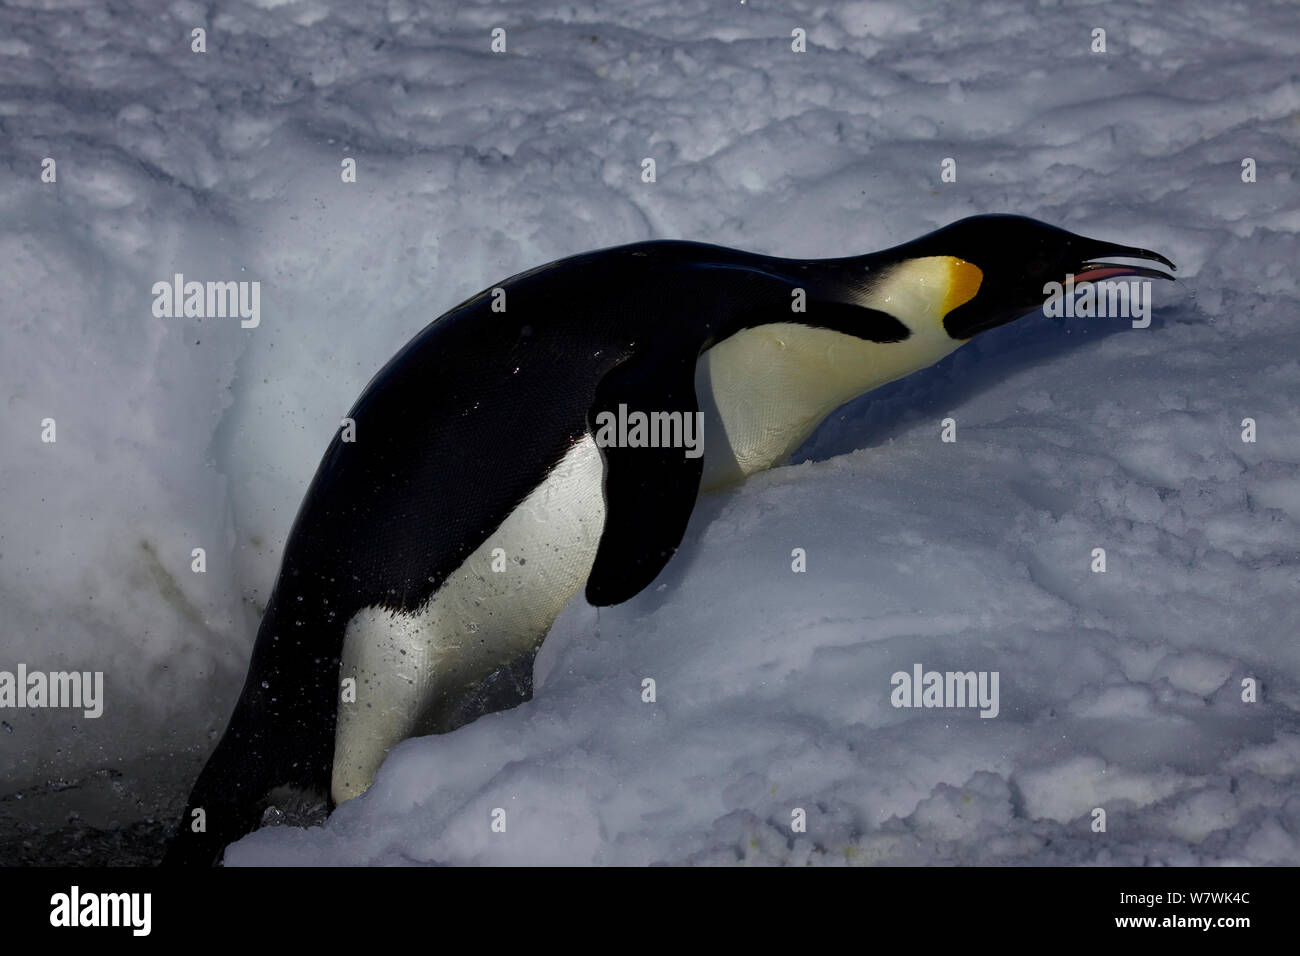 Manchot Empereur (Aptenodytes forsteri) luttant pour sortir du trou de glace, l'Antarctique, novembre. Banque D'Images